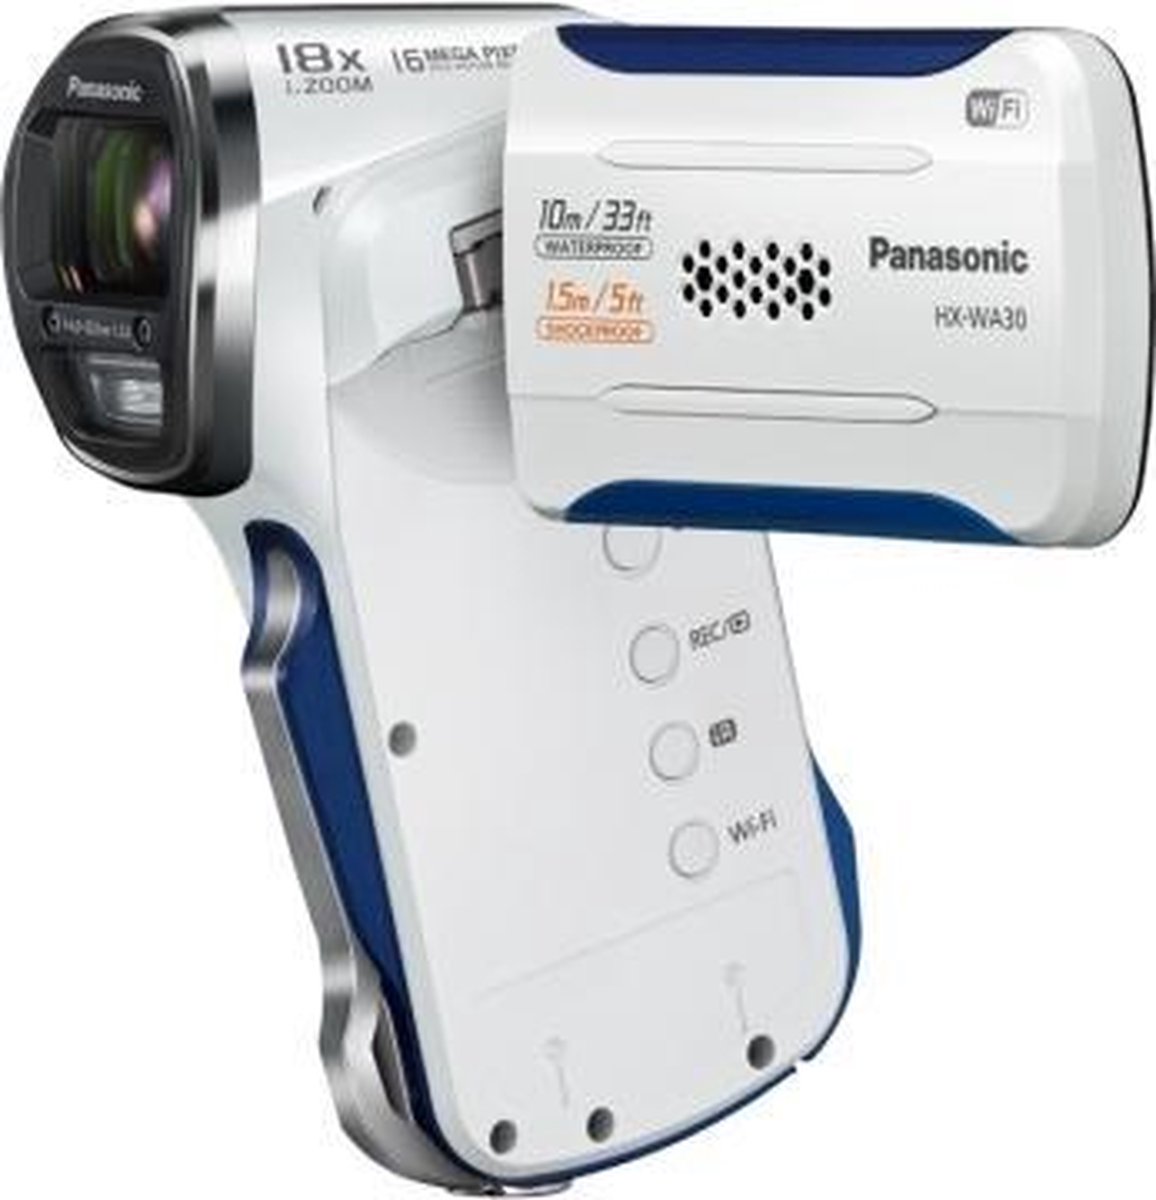 4年保証』 Panasonic HX-WA30 他3点セット